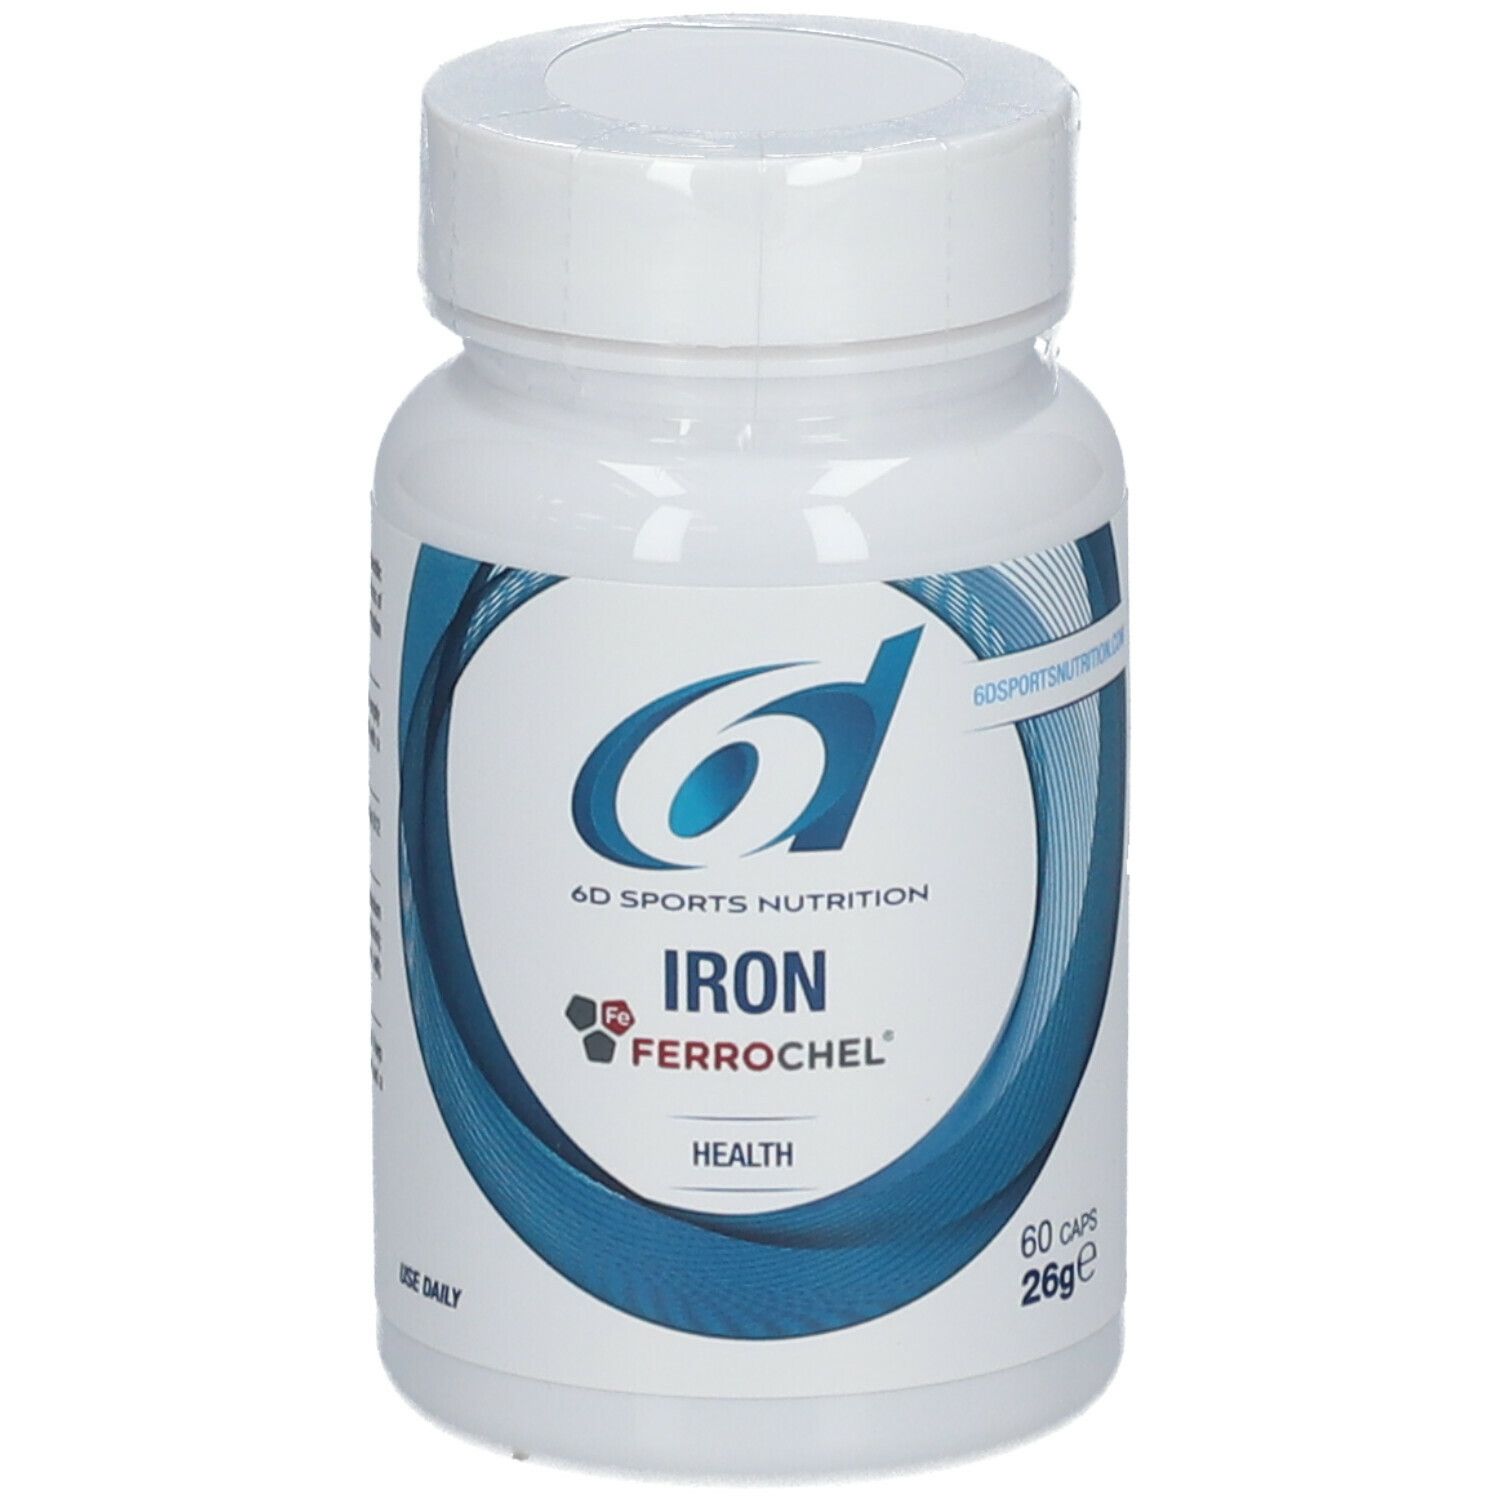 Image of 6D Sports Nutrition Iron Ferrochel®